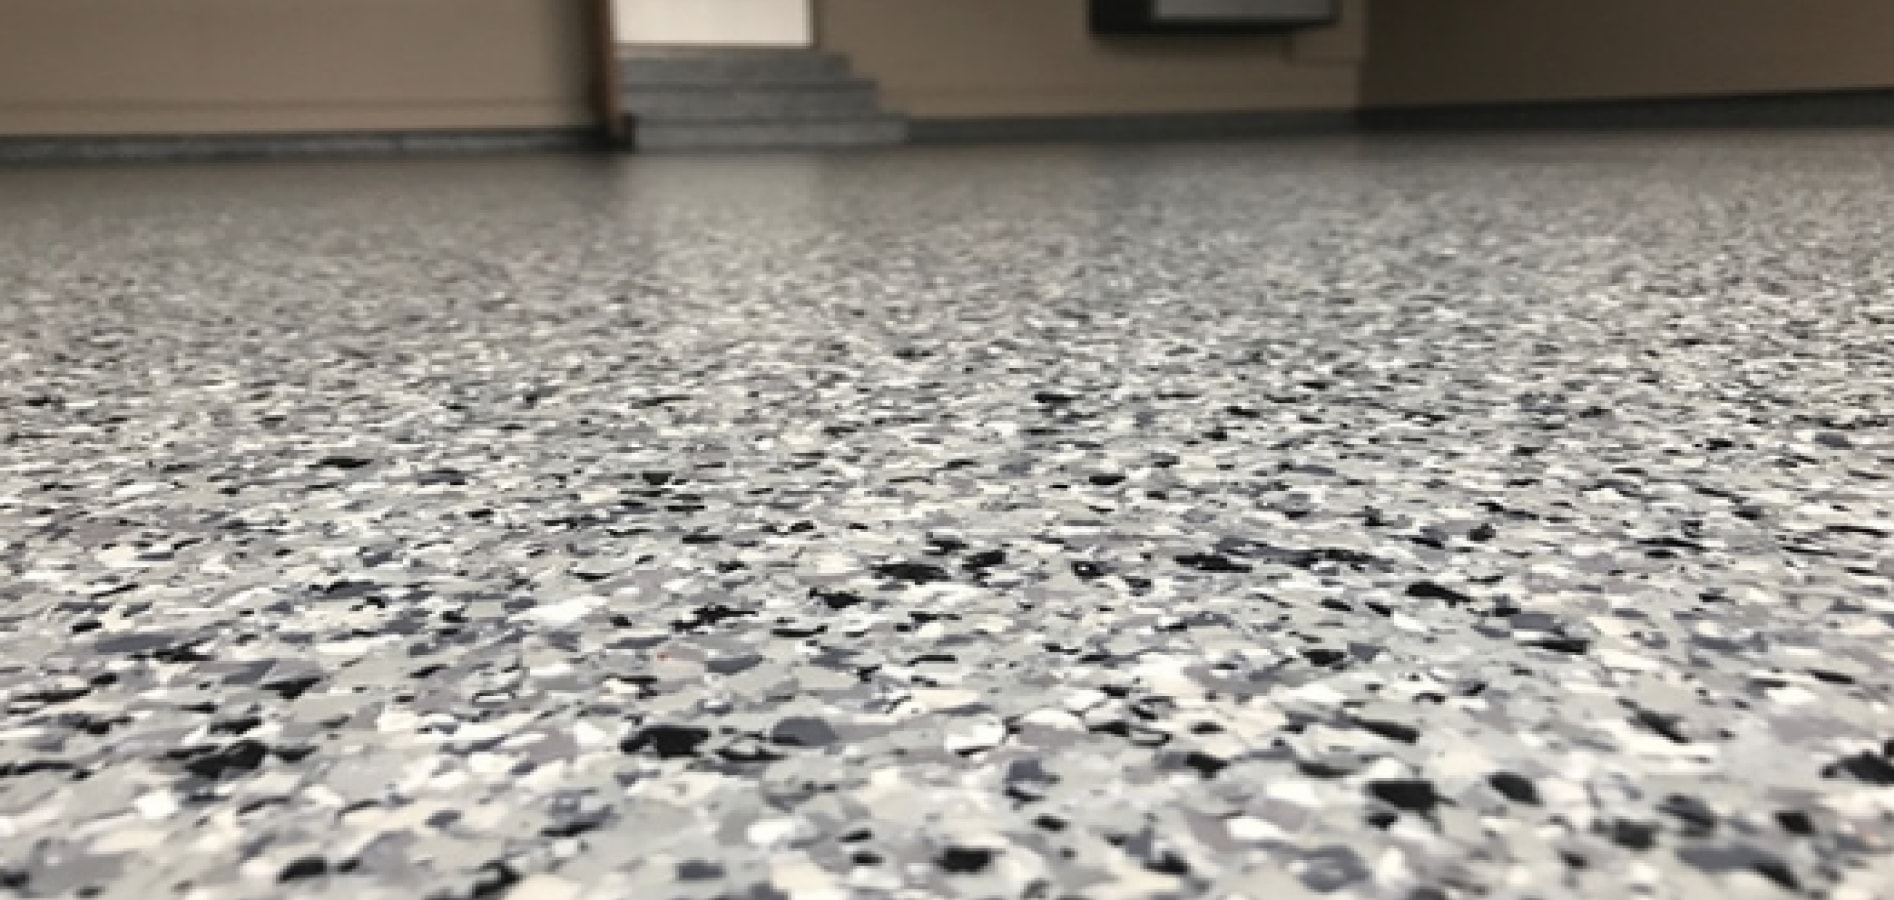 black and white flake epoxy flooring close-up